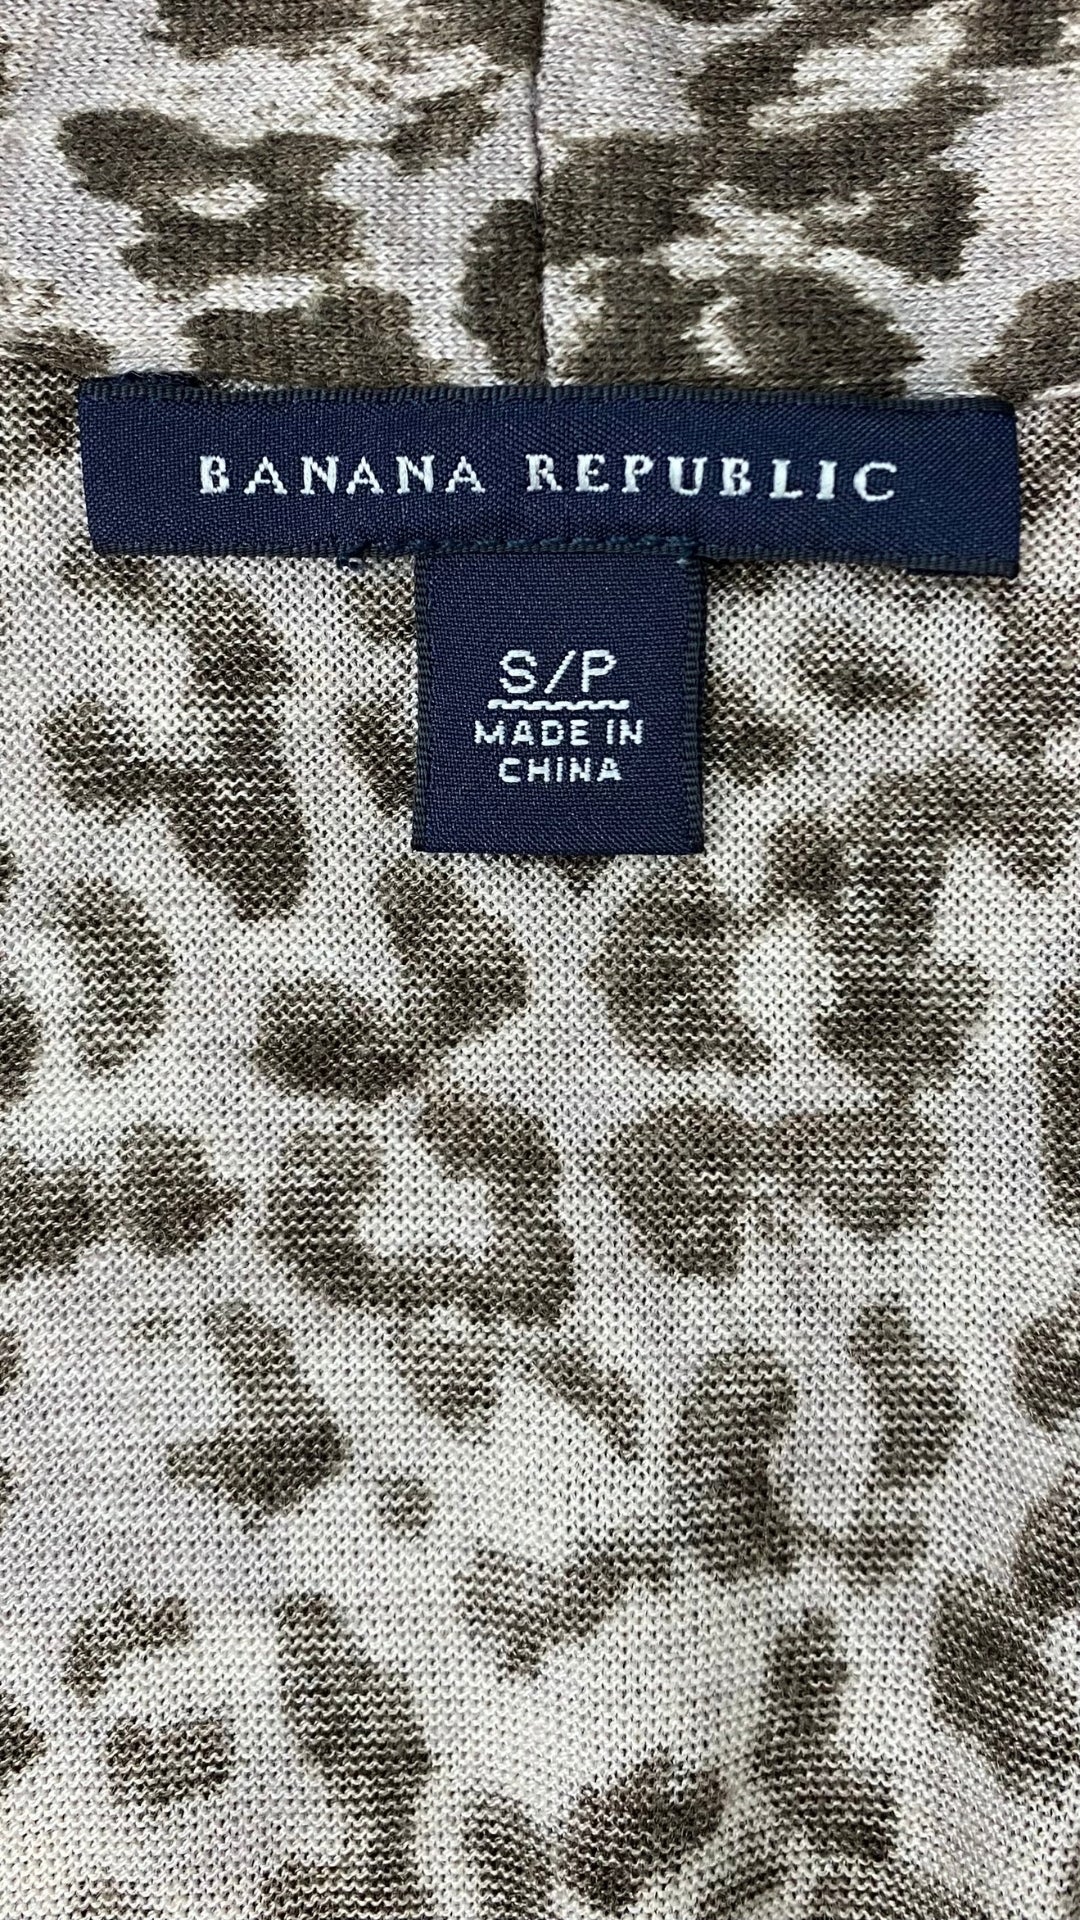 Robe en tricot fin et doux à motif léopard Banana Republic, taille xs-s. Vue de l'étiquette de marque et taille.